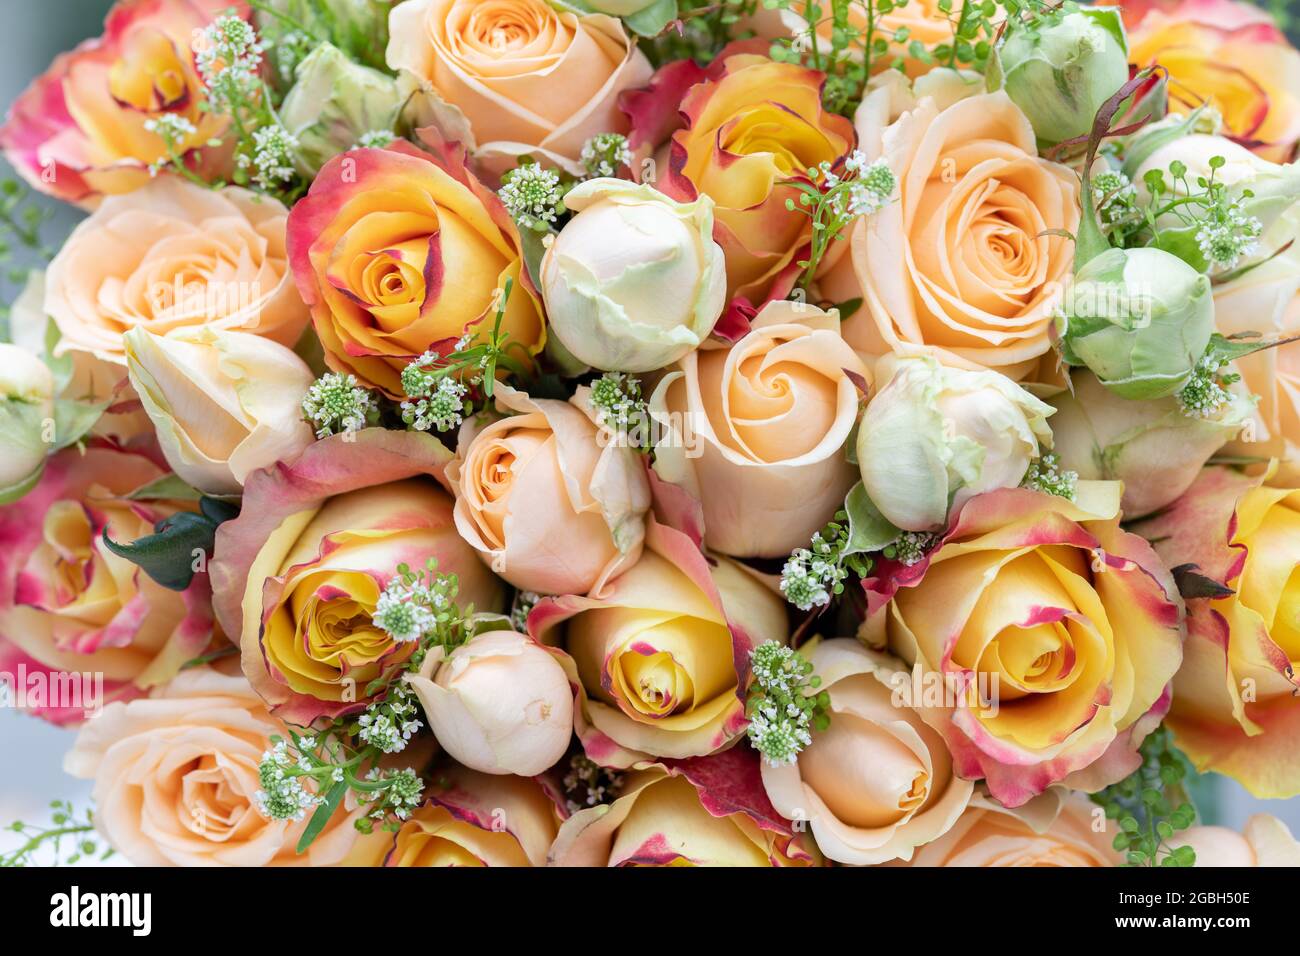 Botanica, bouquet di rose in oro crema, PER IL SALUTO/CARTOLINA-USO IN GERM.SPEAK.C ALCUNE RESTRIZIONI POSSONO APPLICARSI Foto Stock